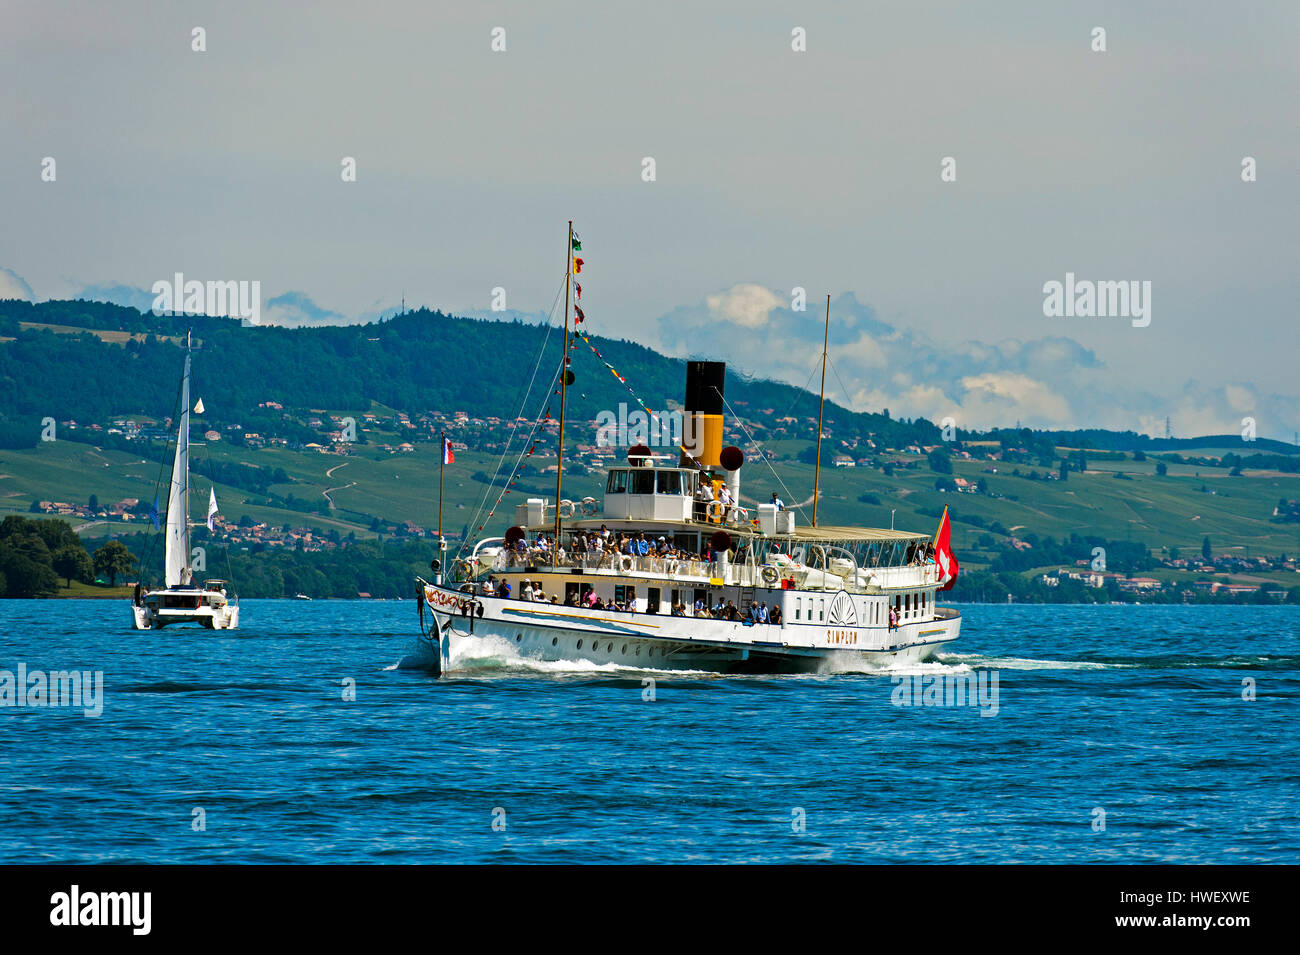 Schaufelrad-Dampfer Simplon am Genfer See, Genf, Schweiz Stockfotografie -  Alamy